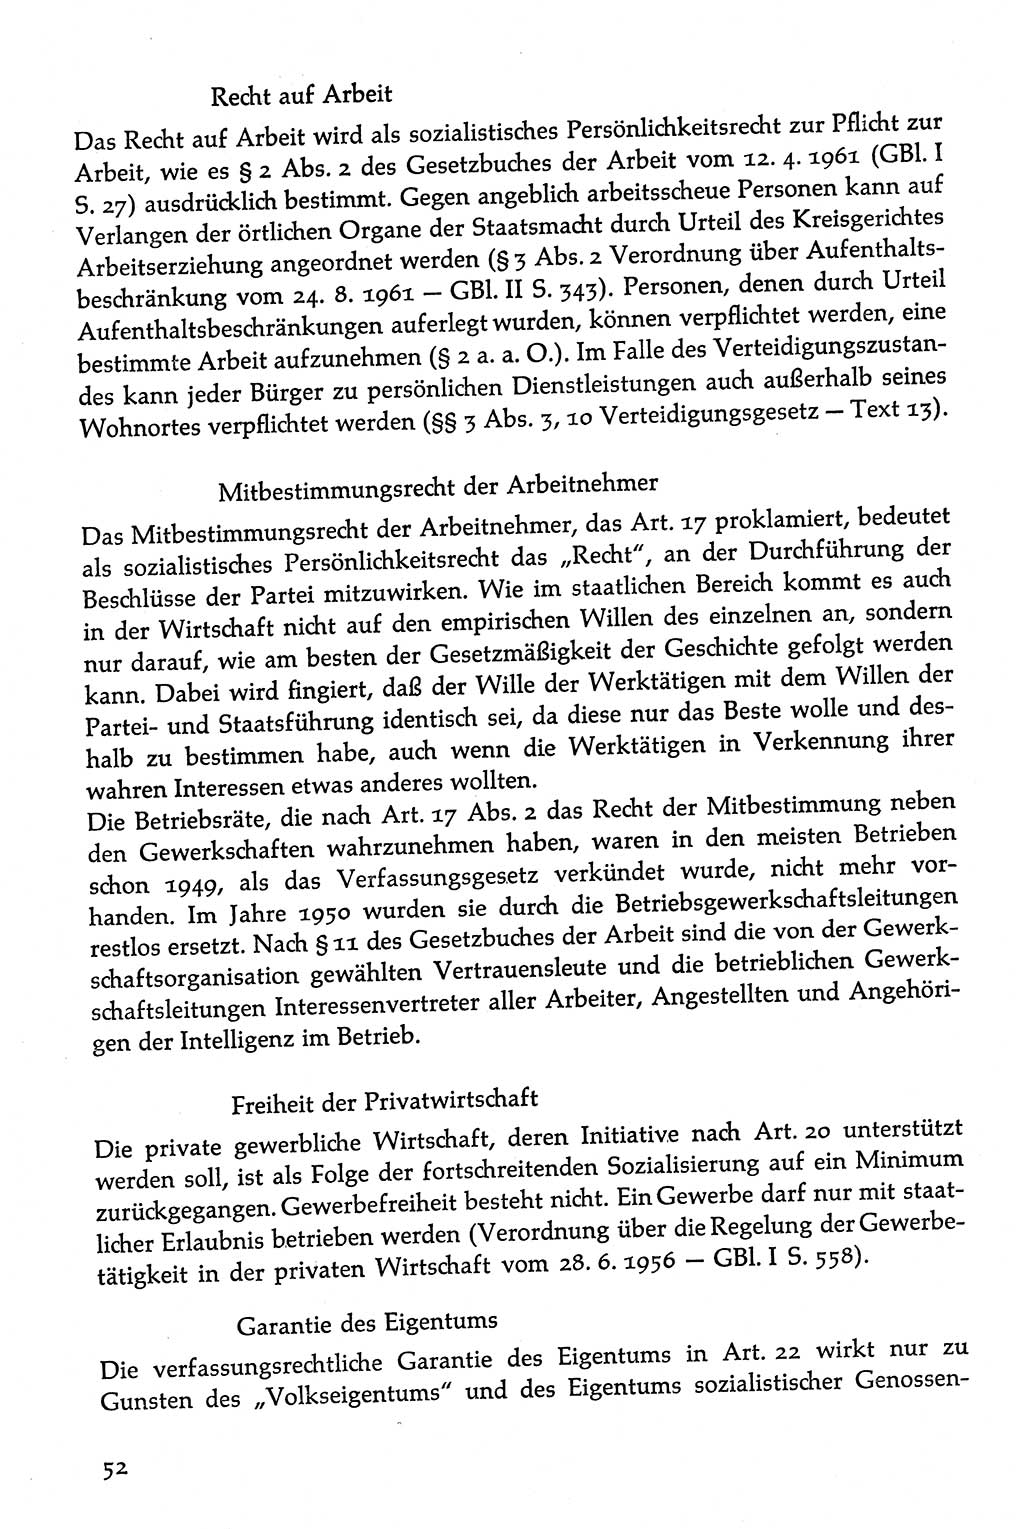 Volksdemokratische Ordnung in Mitteldeutschland [Deutsche Demokratische Republik (DDR)], Texte zur verfassungsrechtlichen Situation 1963, Seite 52 (Volksdem. Ordn. Md. DDR 1963, S. 52)